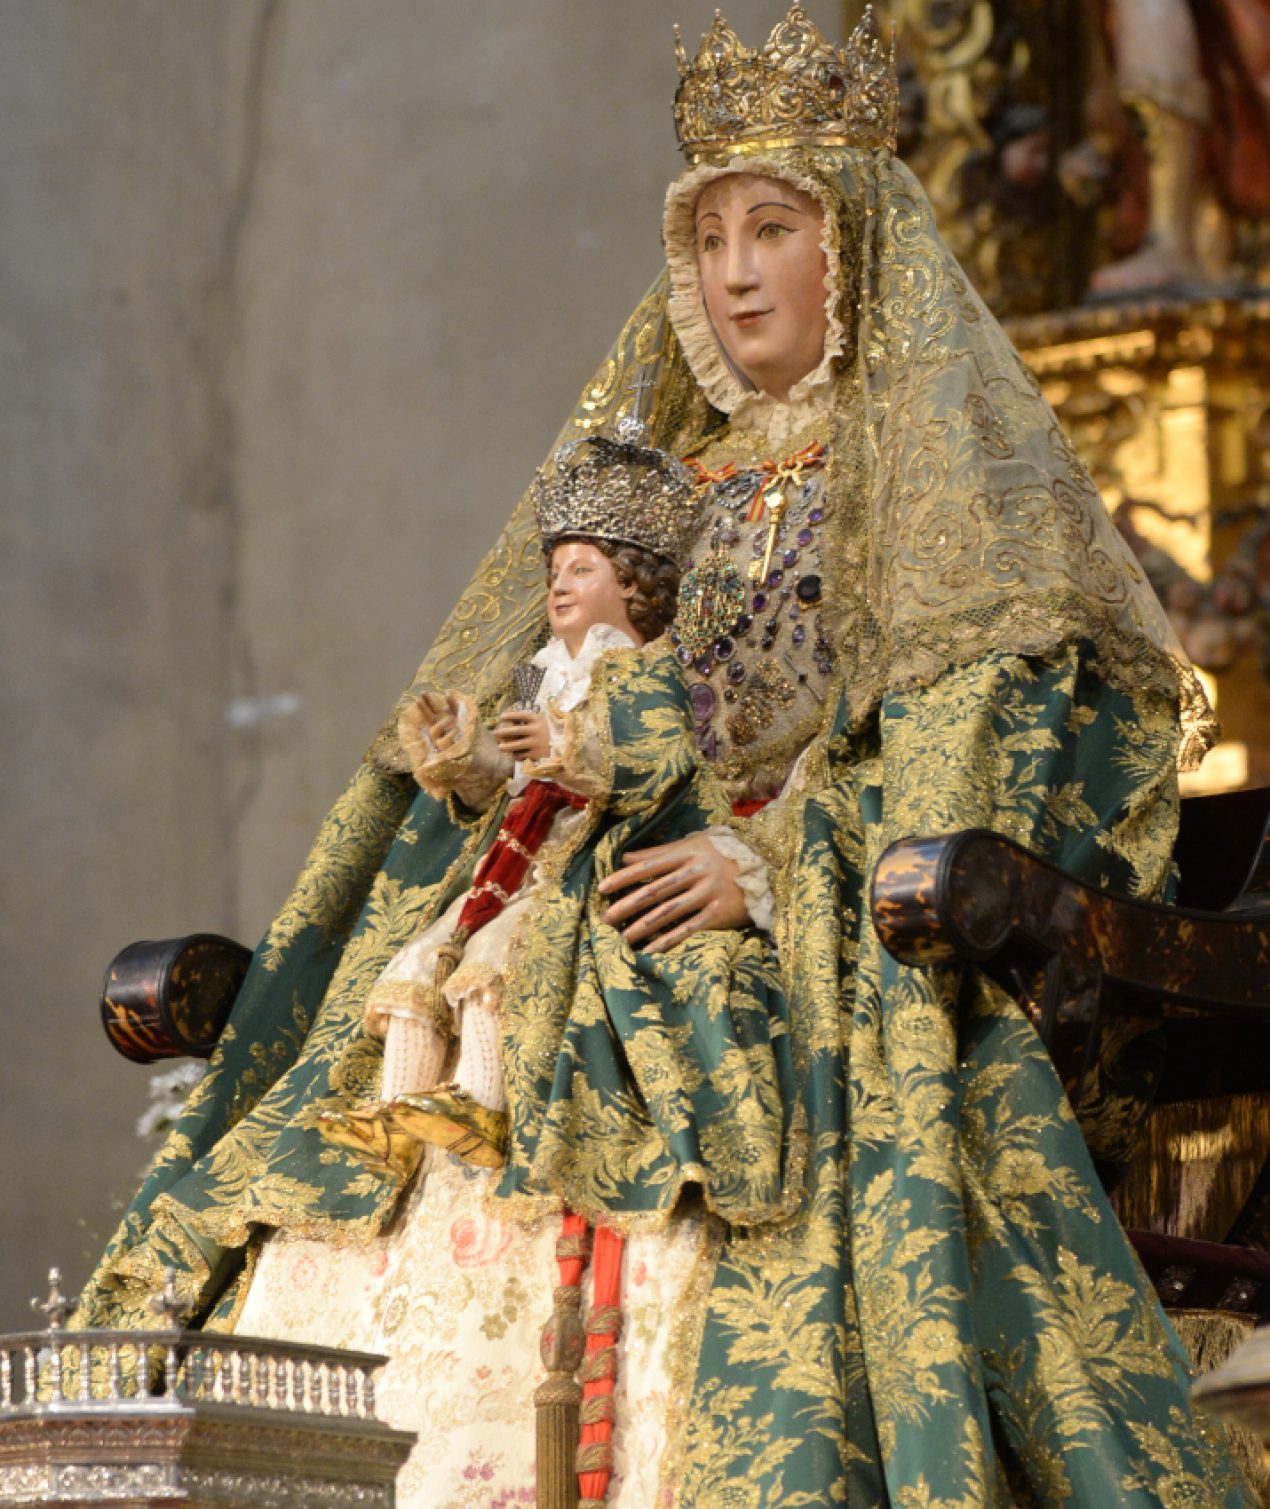 La Virgen de los Reyes en la Capilla del Sagrario